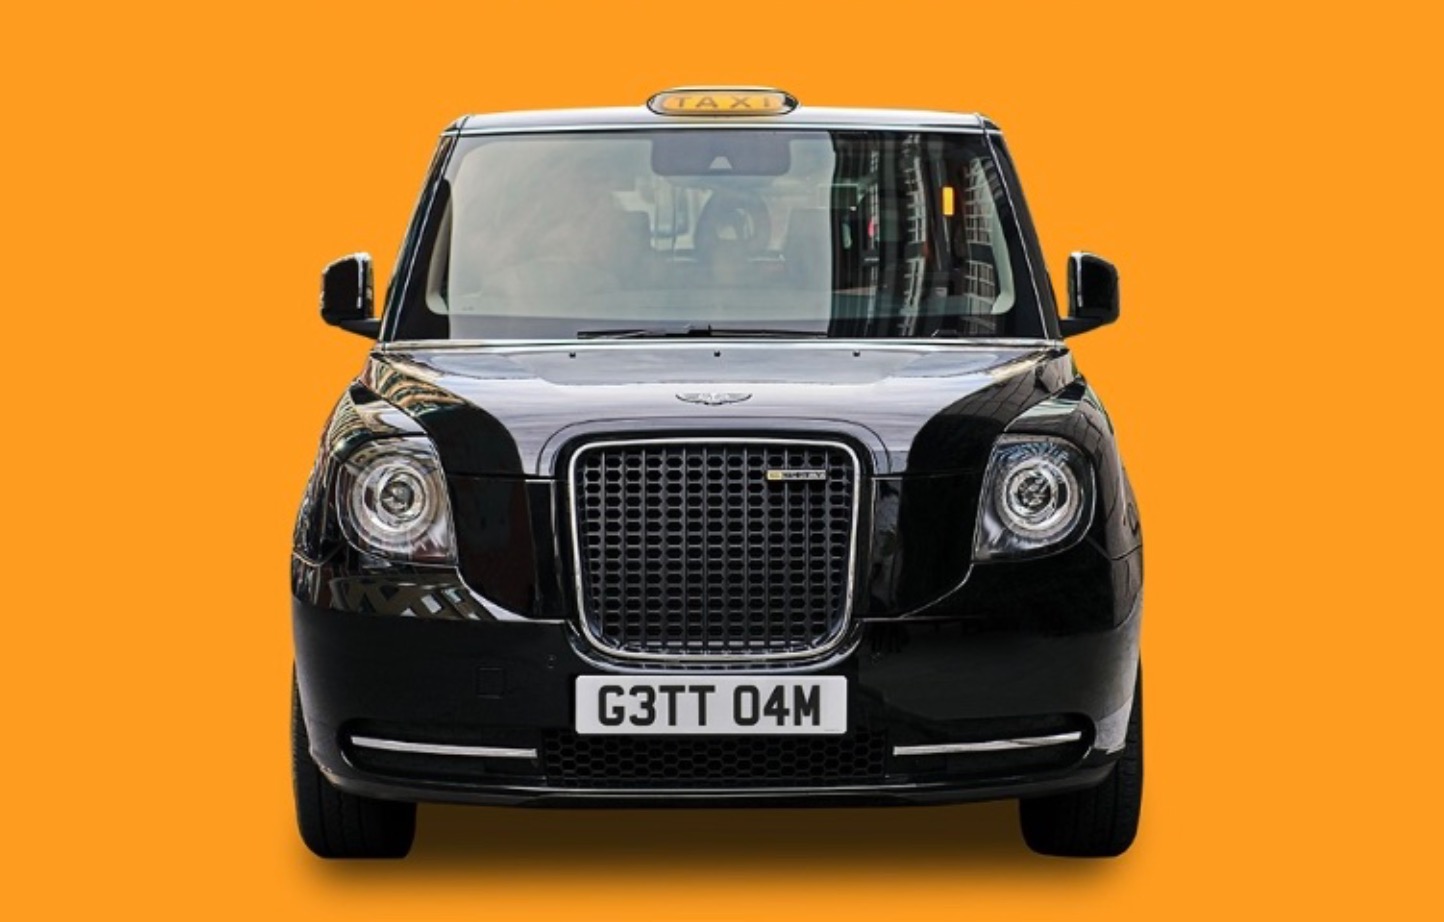 Le Black Cab londonien retrouve des couleurs en OOH